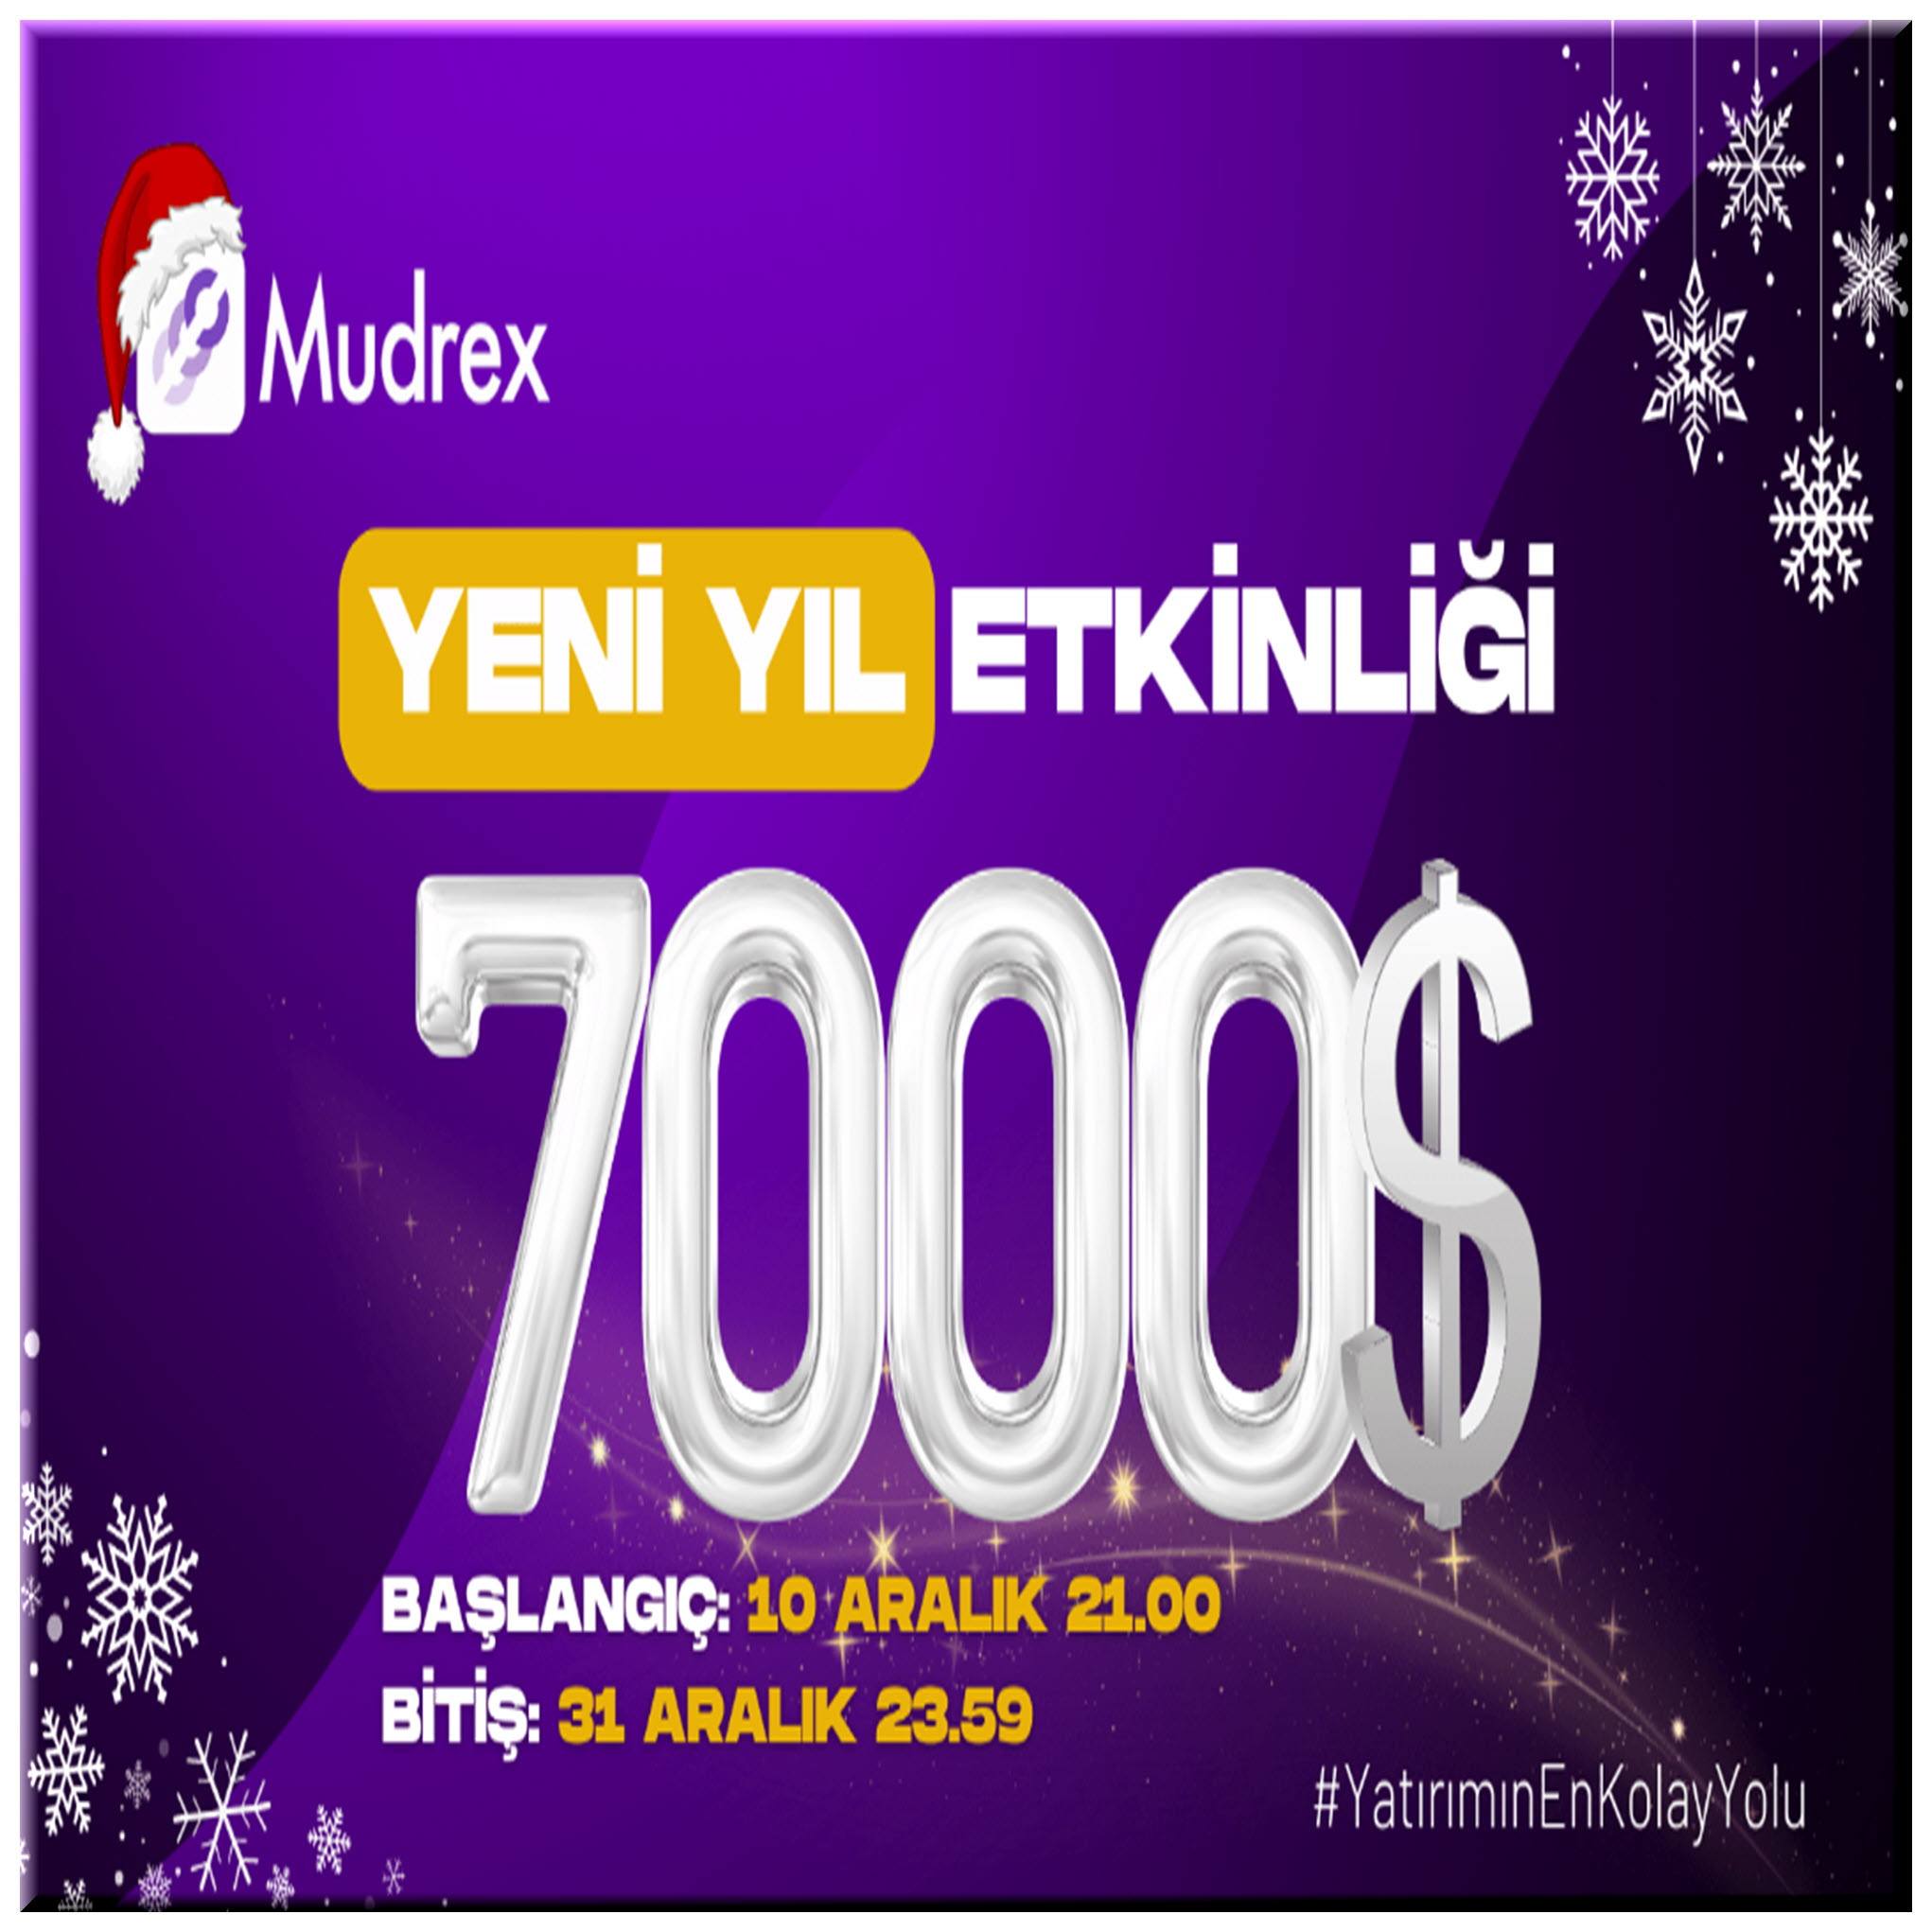 Mudrex Türkiye Yeni Yıl Gleam Etkinliği artık 7000$!